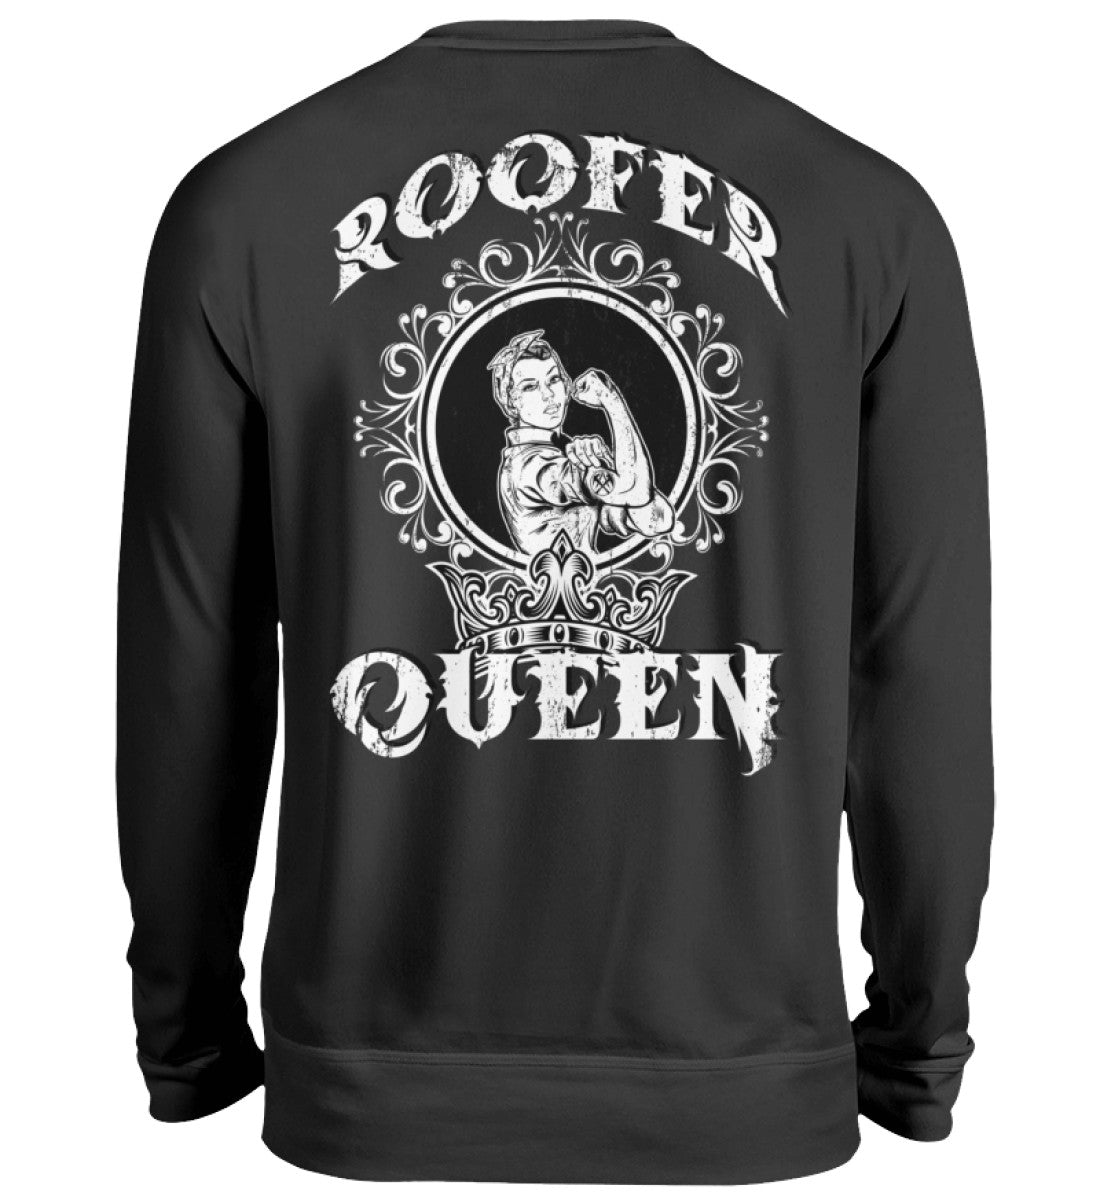 Roofer Queen Version 1.0  - Unisex Pullover €39.95 Rooferking